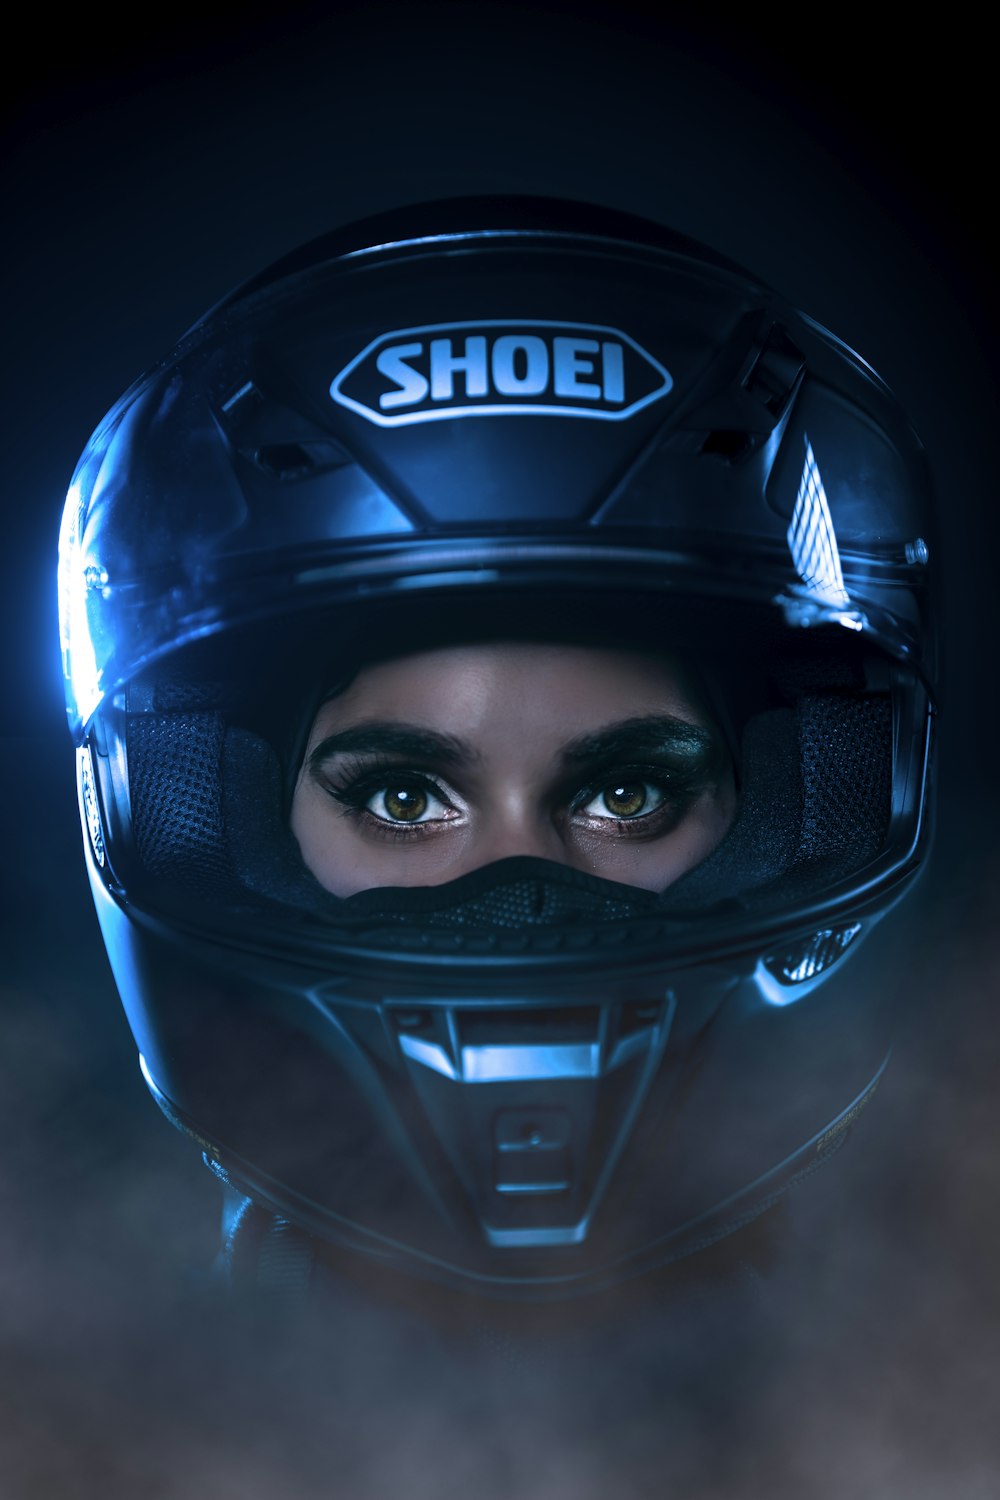 black and blue helmet on black surface